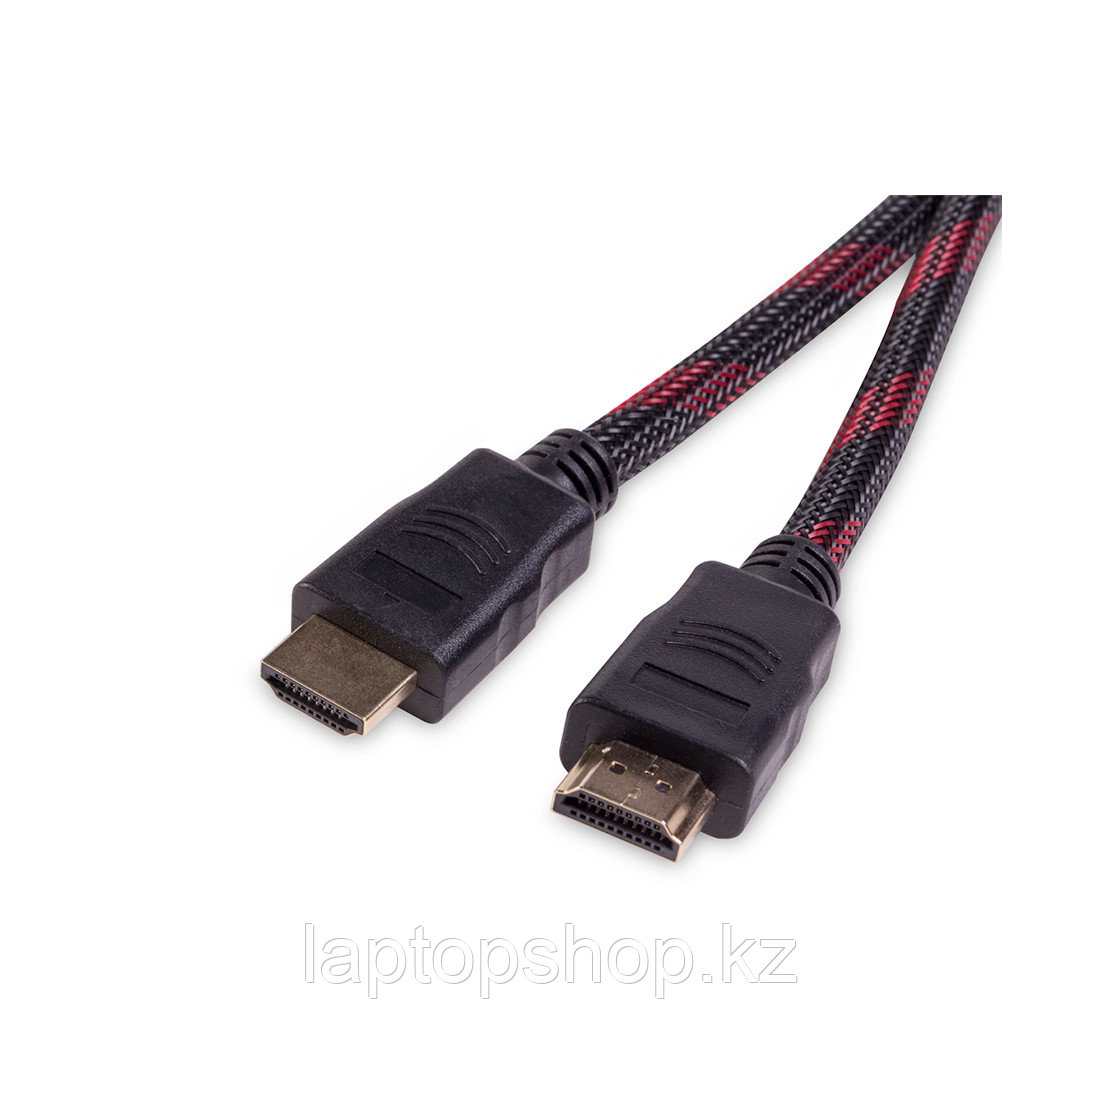 Интерфейсный кабель iPower HDMI-HDMI ver.1.4 15 м. 5 в., фото 1